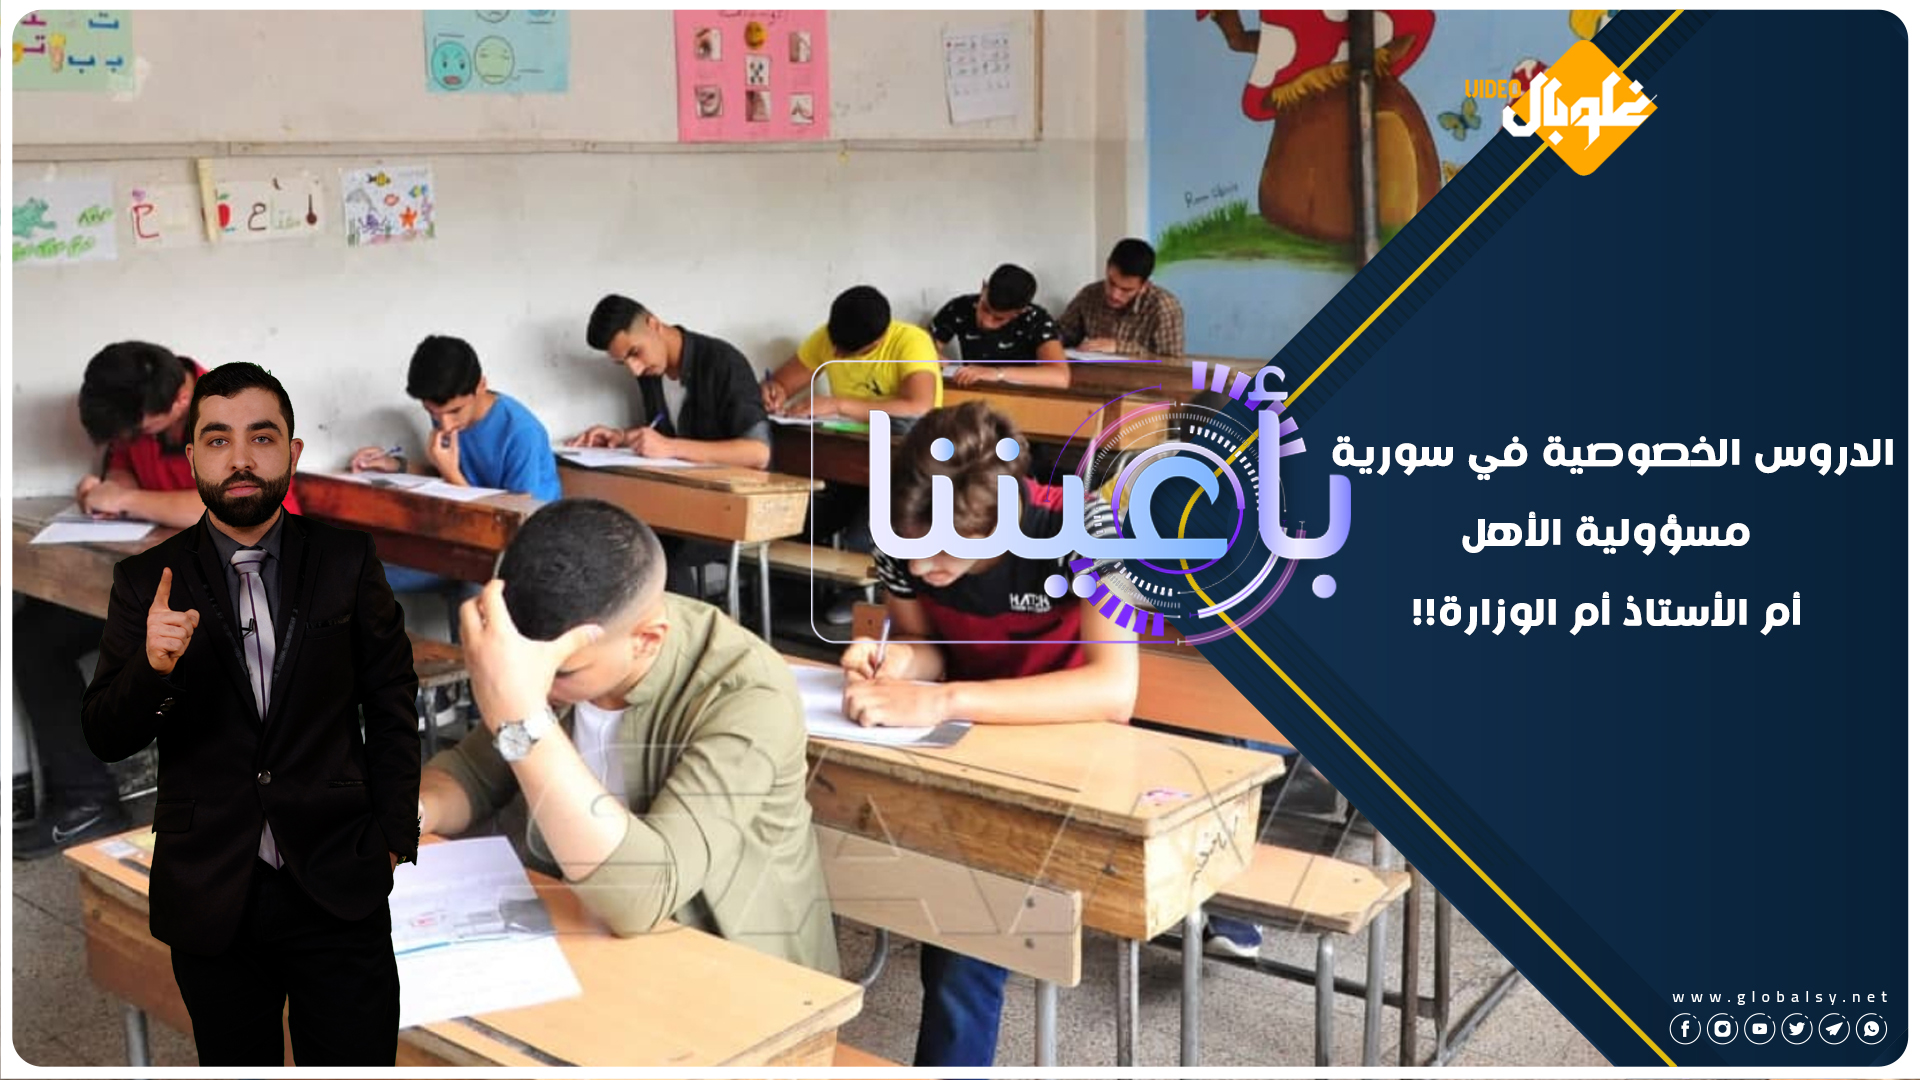 بأعيننا | الموسم الخامس | الحلقة 14: سورية خارج “التصنيف العالمي لجودة التعليم” والدروس الخصوصية تتسيد المشهد